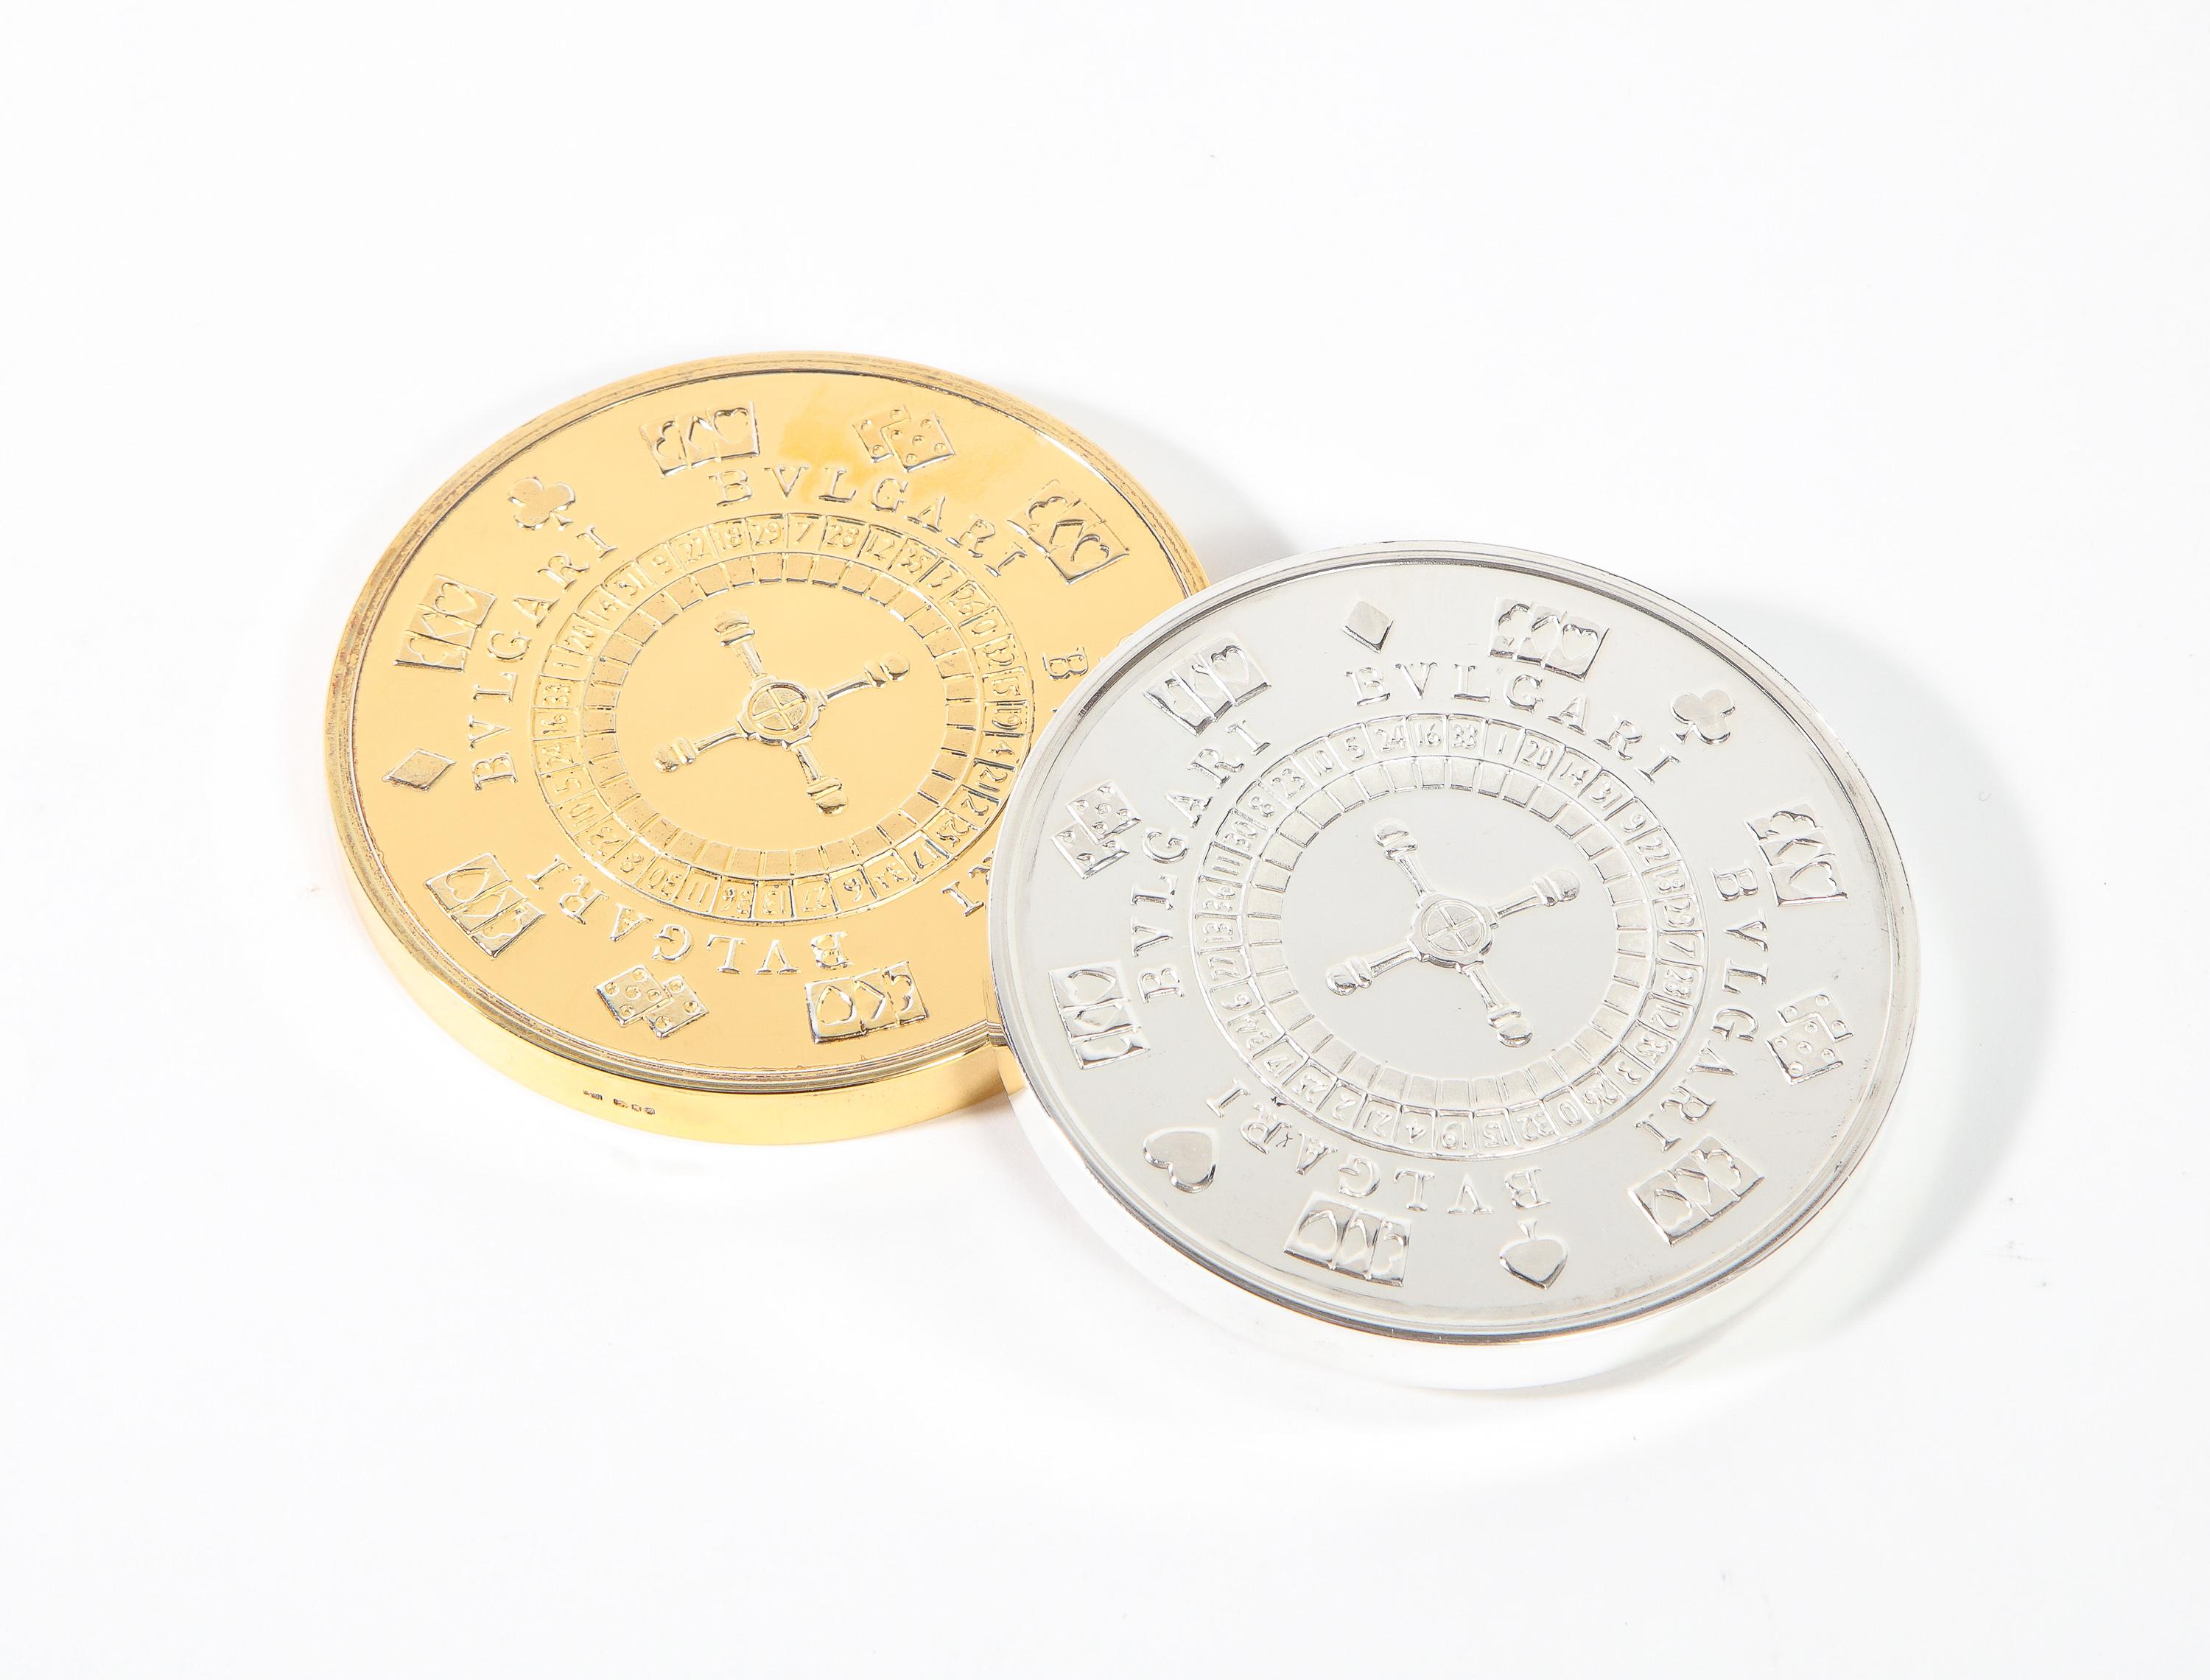 Bvlgari Bulgari Sterling Silver-Gilt Oversized Casino Paperweight Coin 